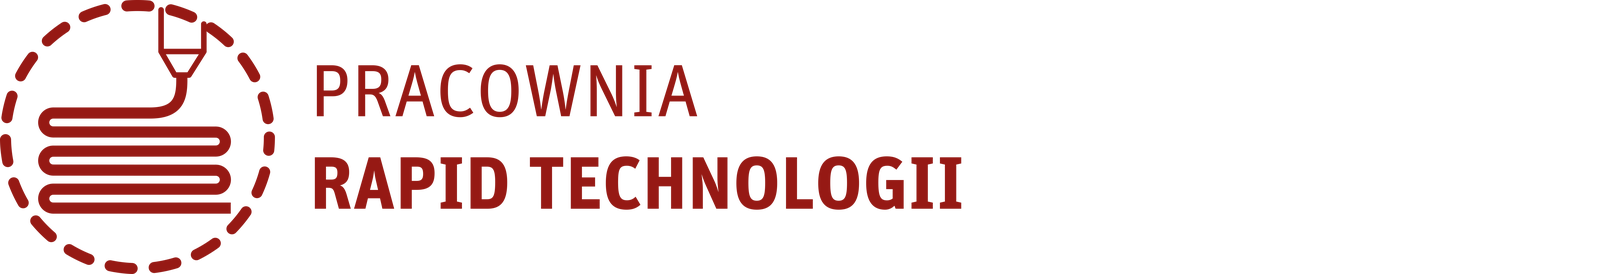 Na obrazku znajduje się logo  Pracowni rapid technologii